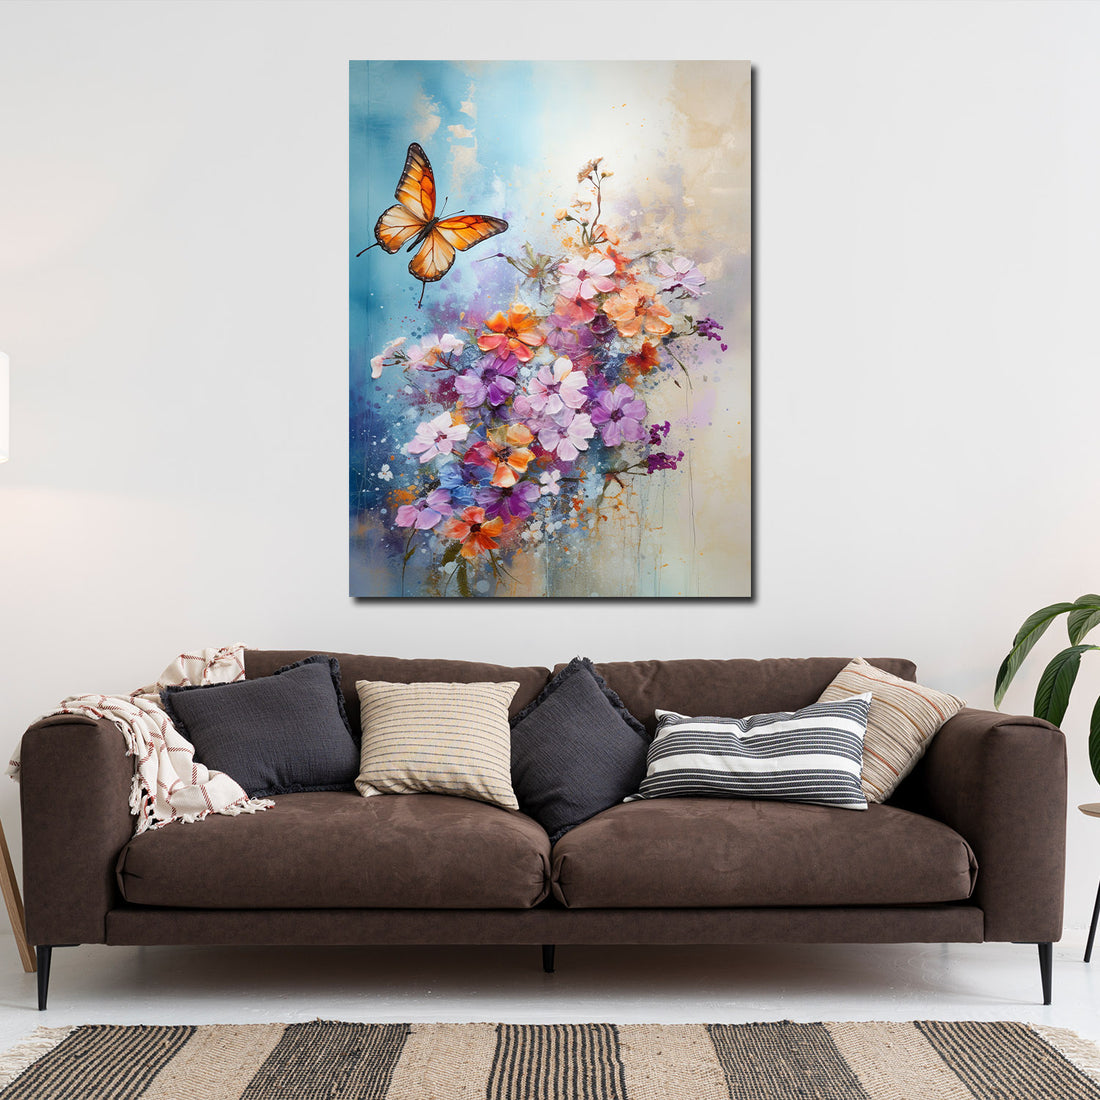 Wandbild abstrakt Blumen mit Schmetterling